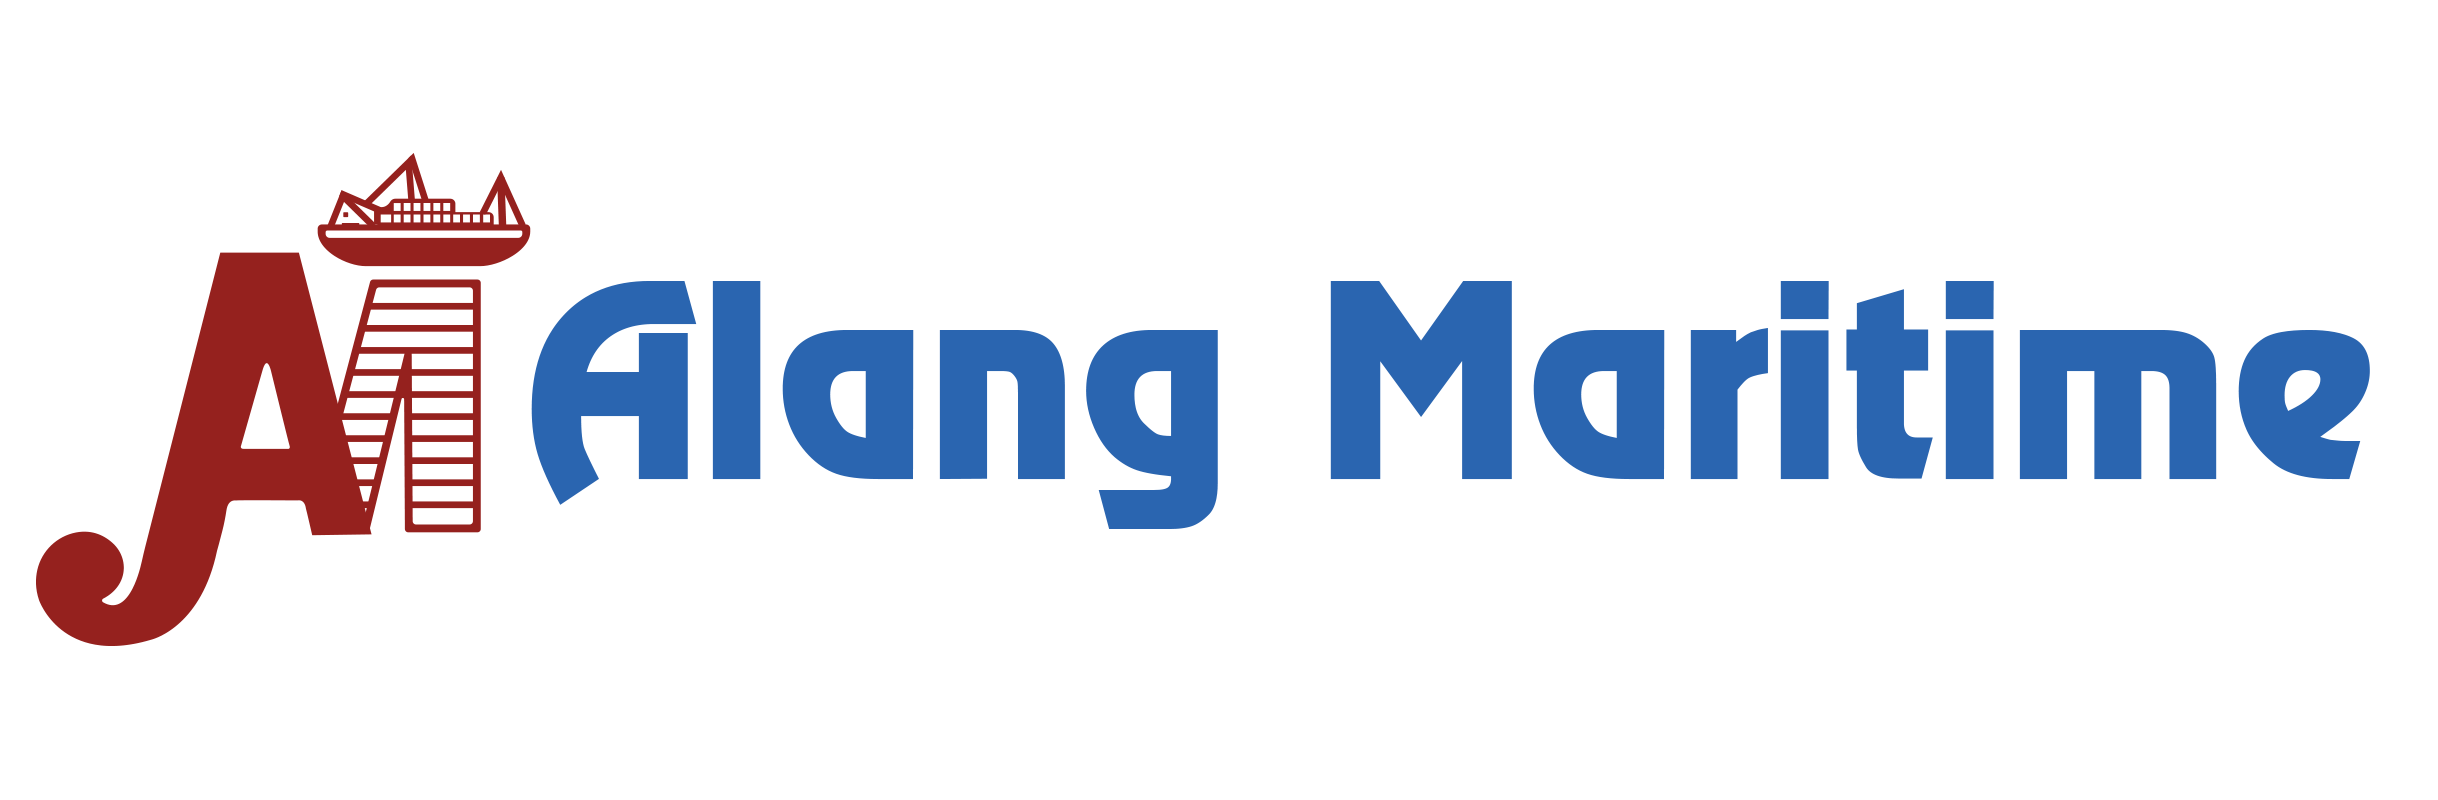 Alang Maritime